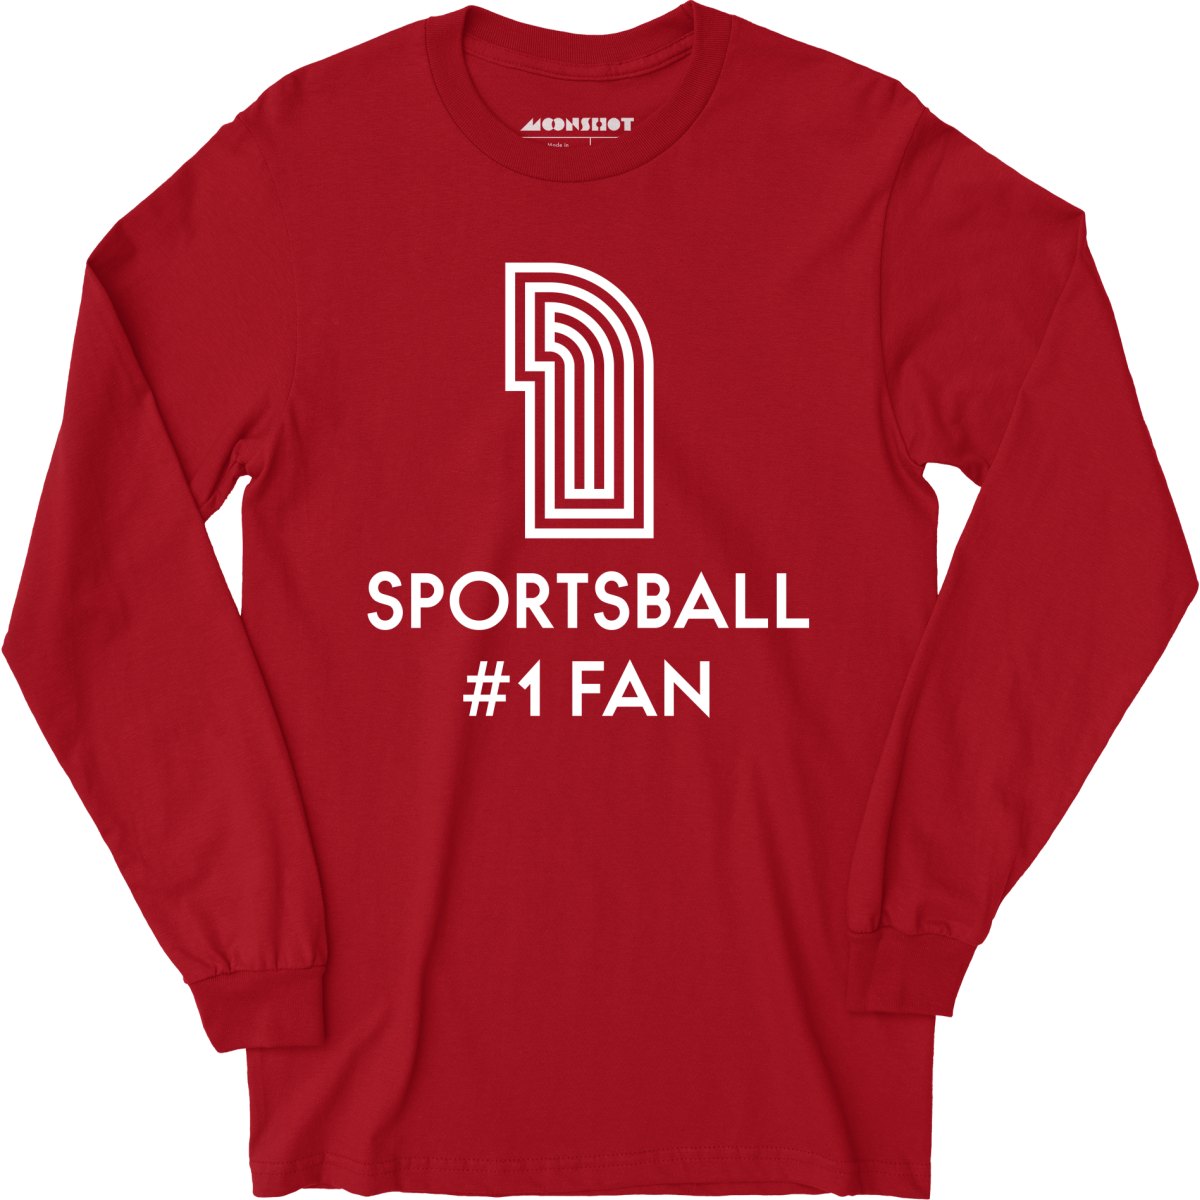 Sportsball #1 Fan - Long Sleeve T-Shirt